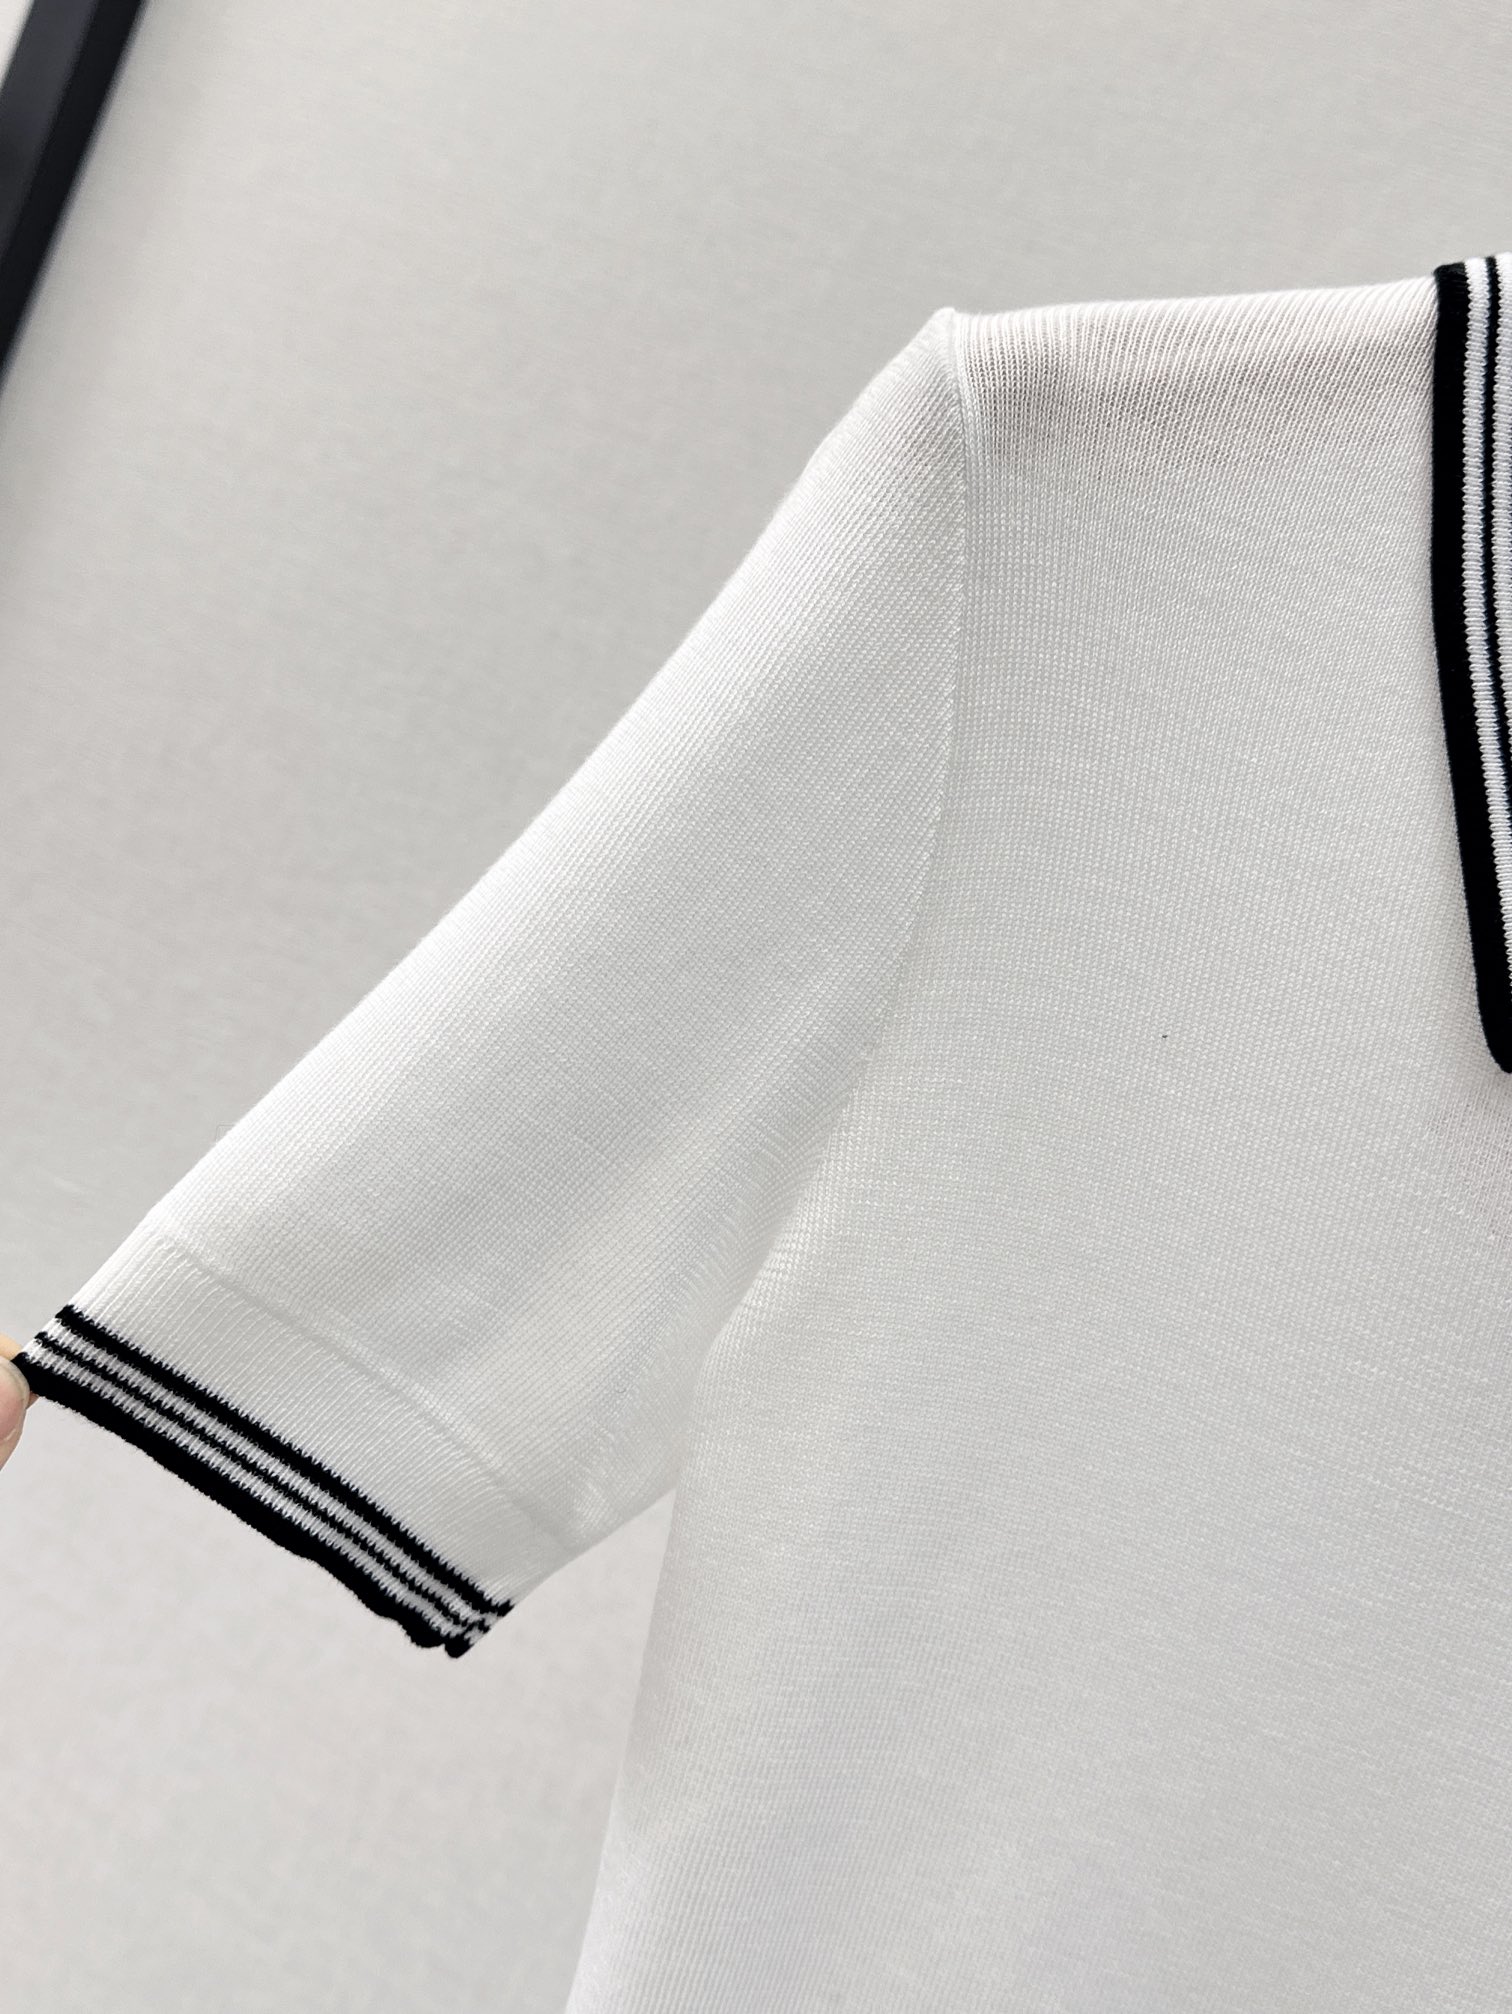 减龄单品Miu24Ss春夏最新款Polo翻领针织衫百搭气质完全正确质感上身非常轻盈亲肤品相很好表面肌理紧